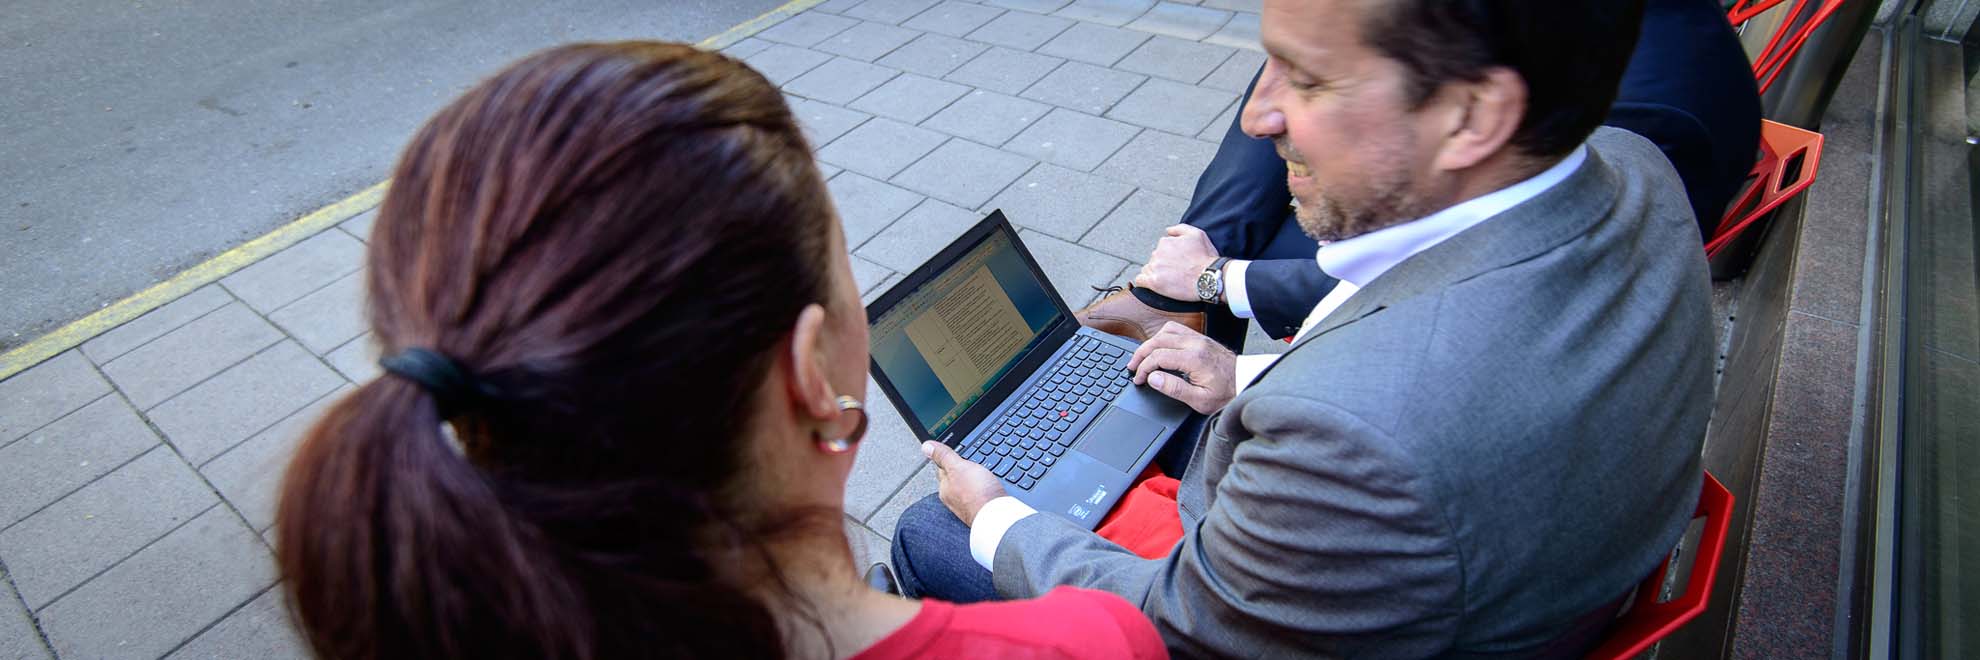 man and woman looking at computer